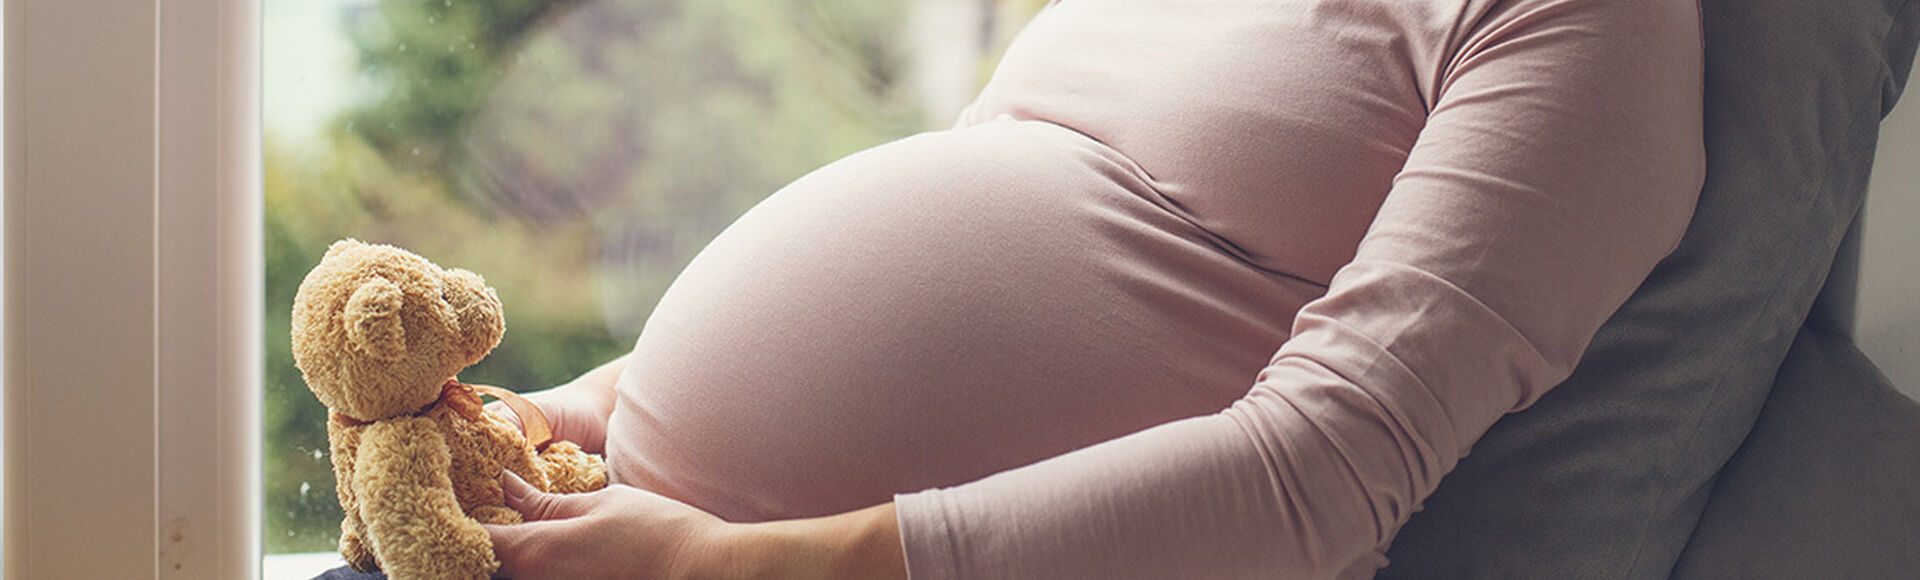 Obstetra seu acompanhante durante o parto